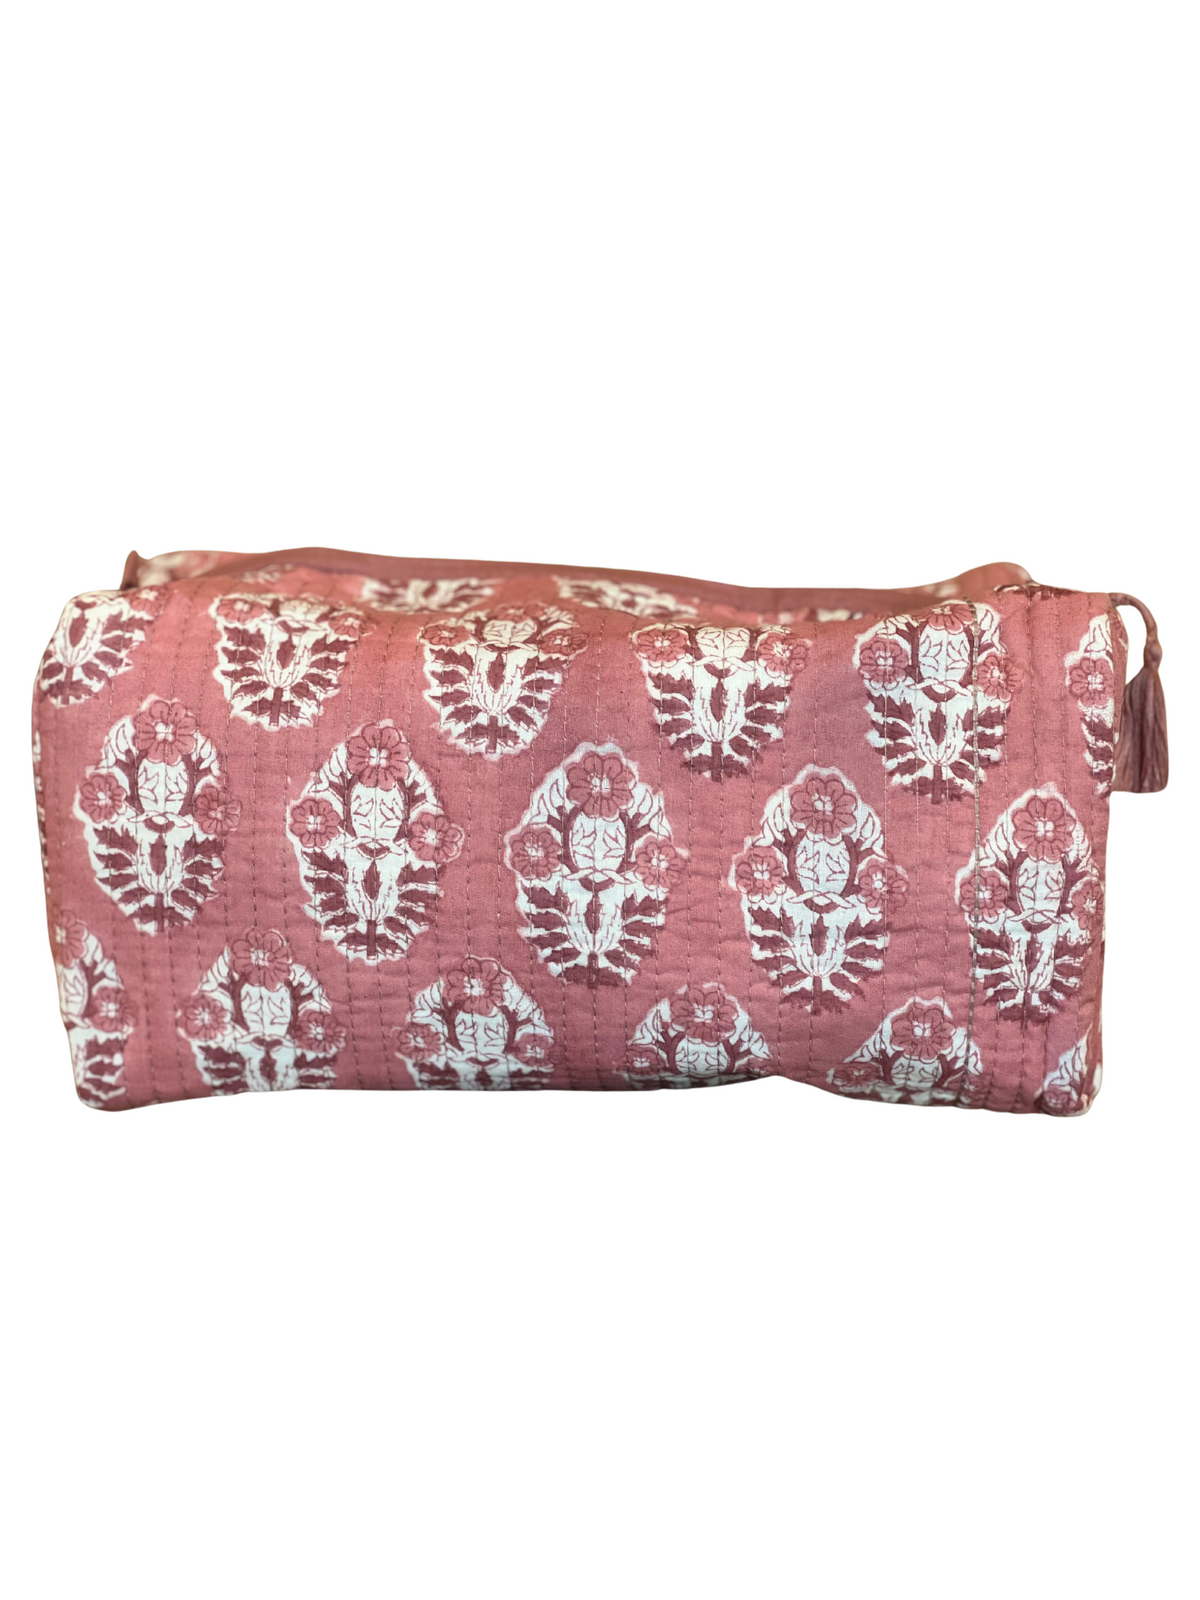 Pink Floral Block Print Cosmetic Bag Large